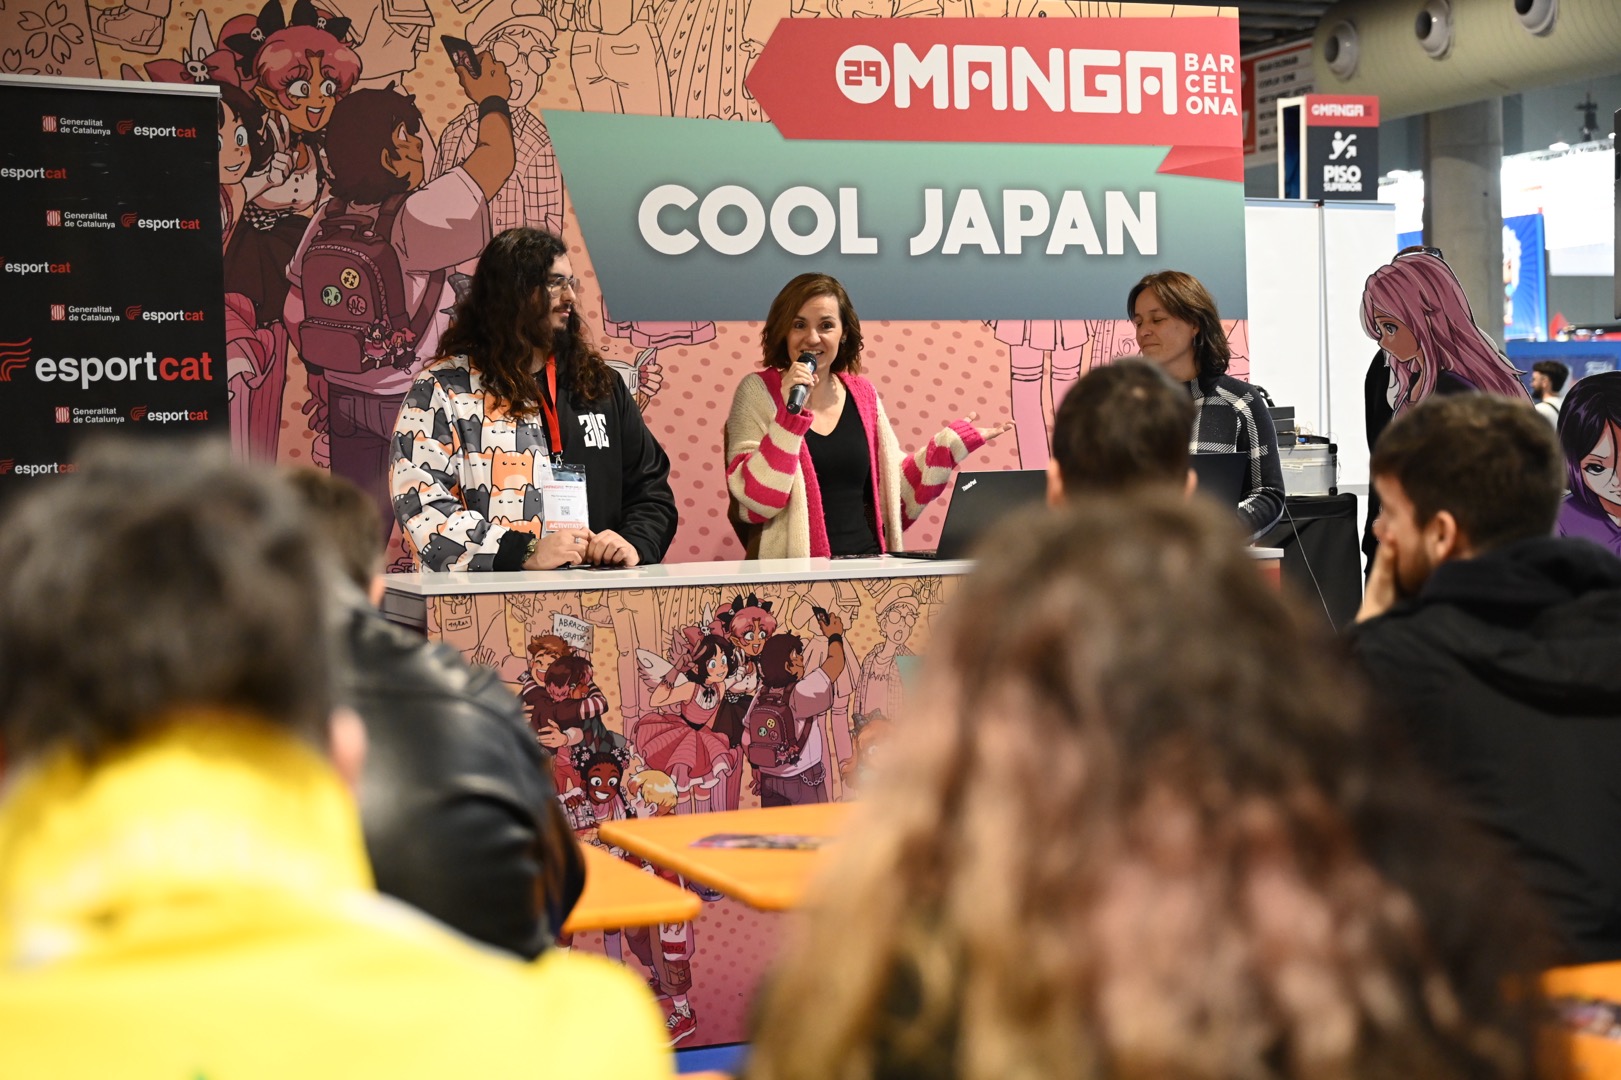 Anna Caula al Saló del Manga presentant el còmic 'No tinc nom', juntament amb el guionista Pau Fernández.